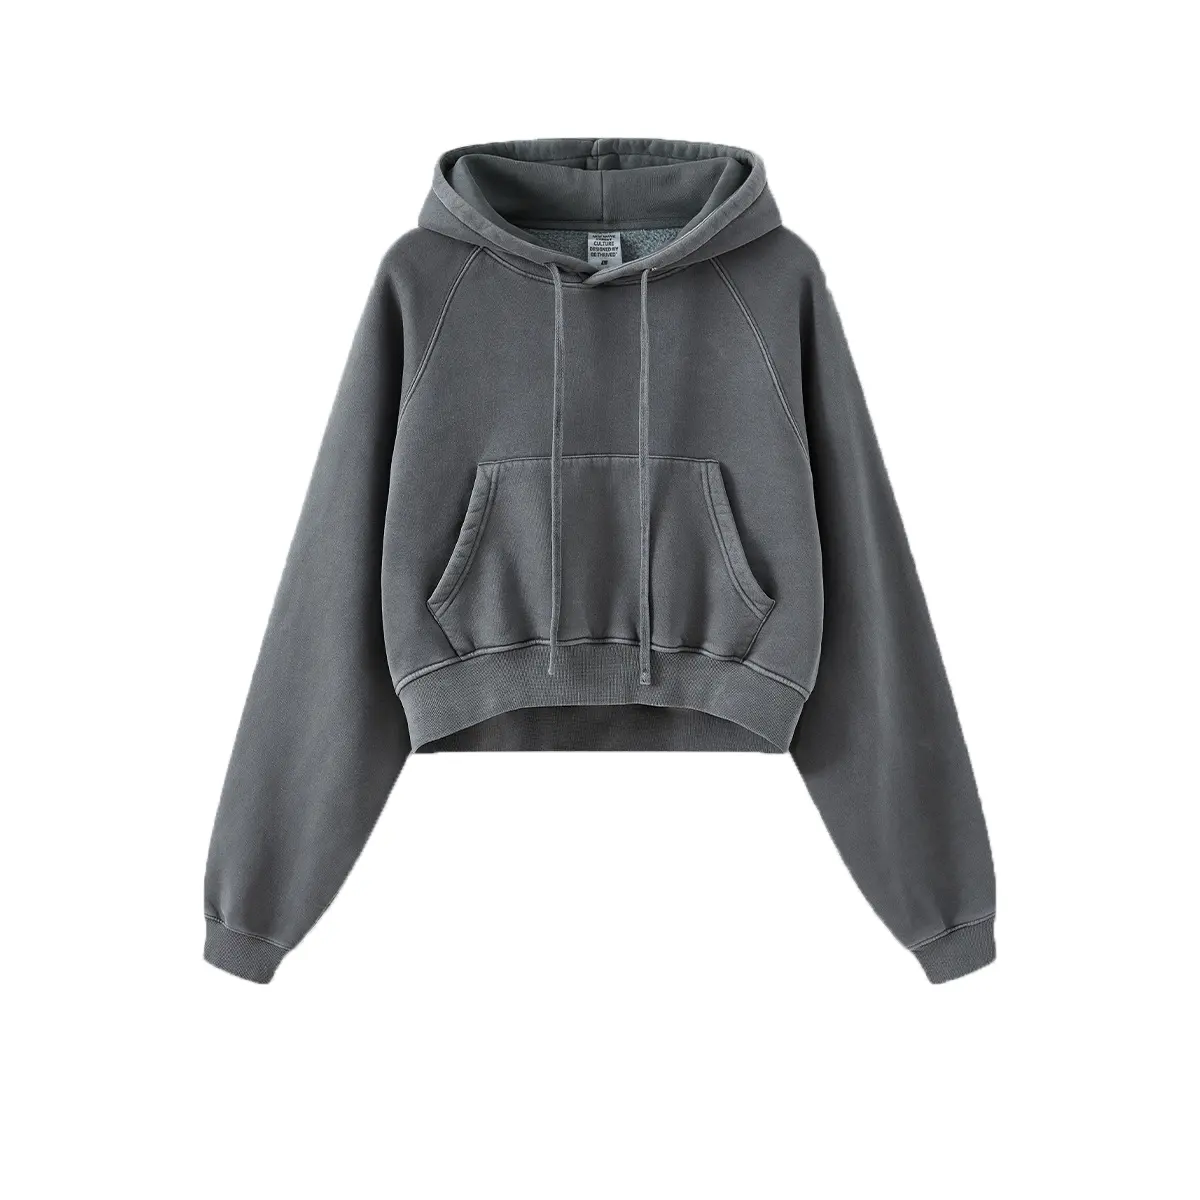 Kustom hoodie crop distressed hoodie atasan crop hoodie asam cuci kaus hoodie wanita